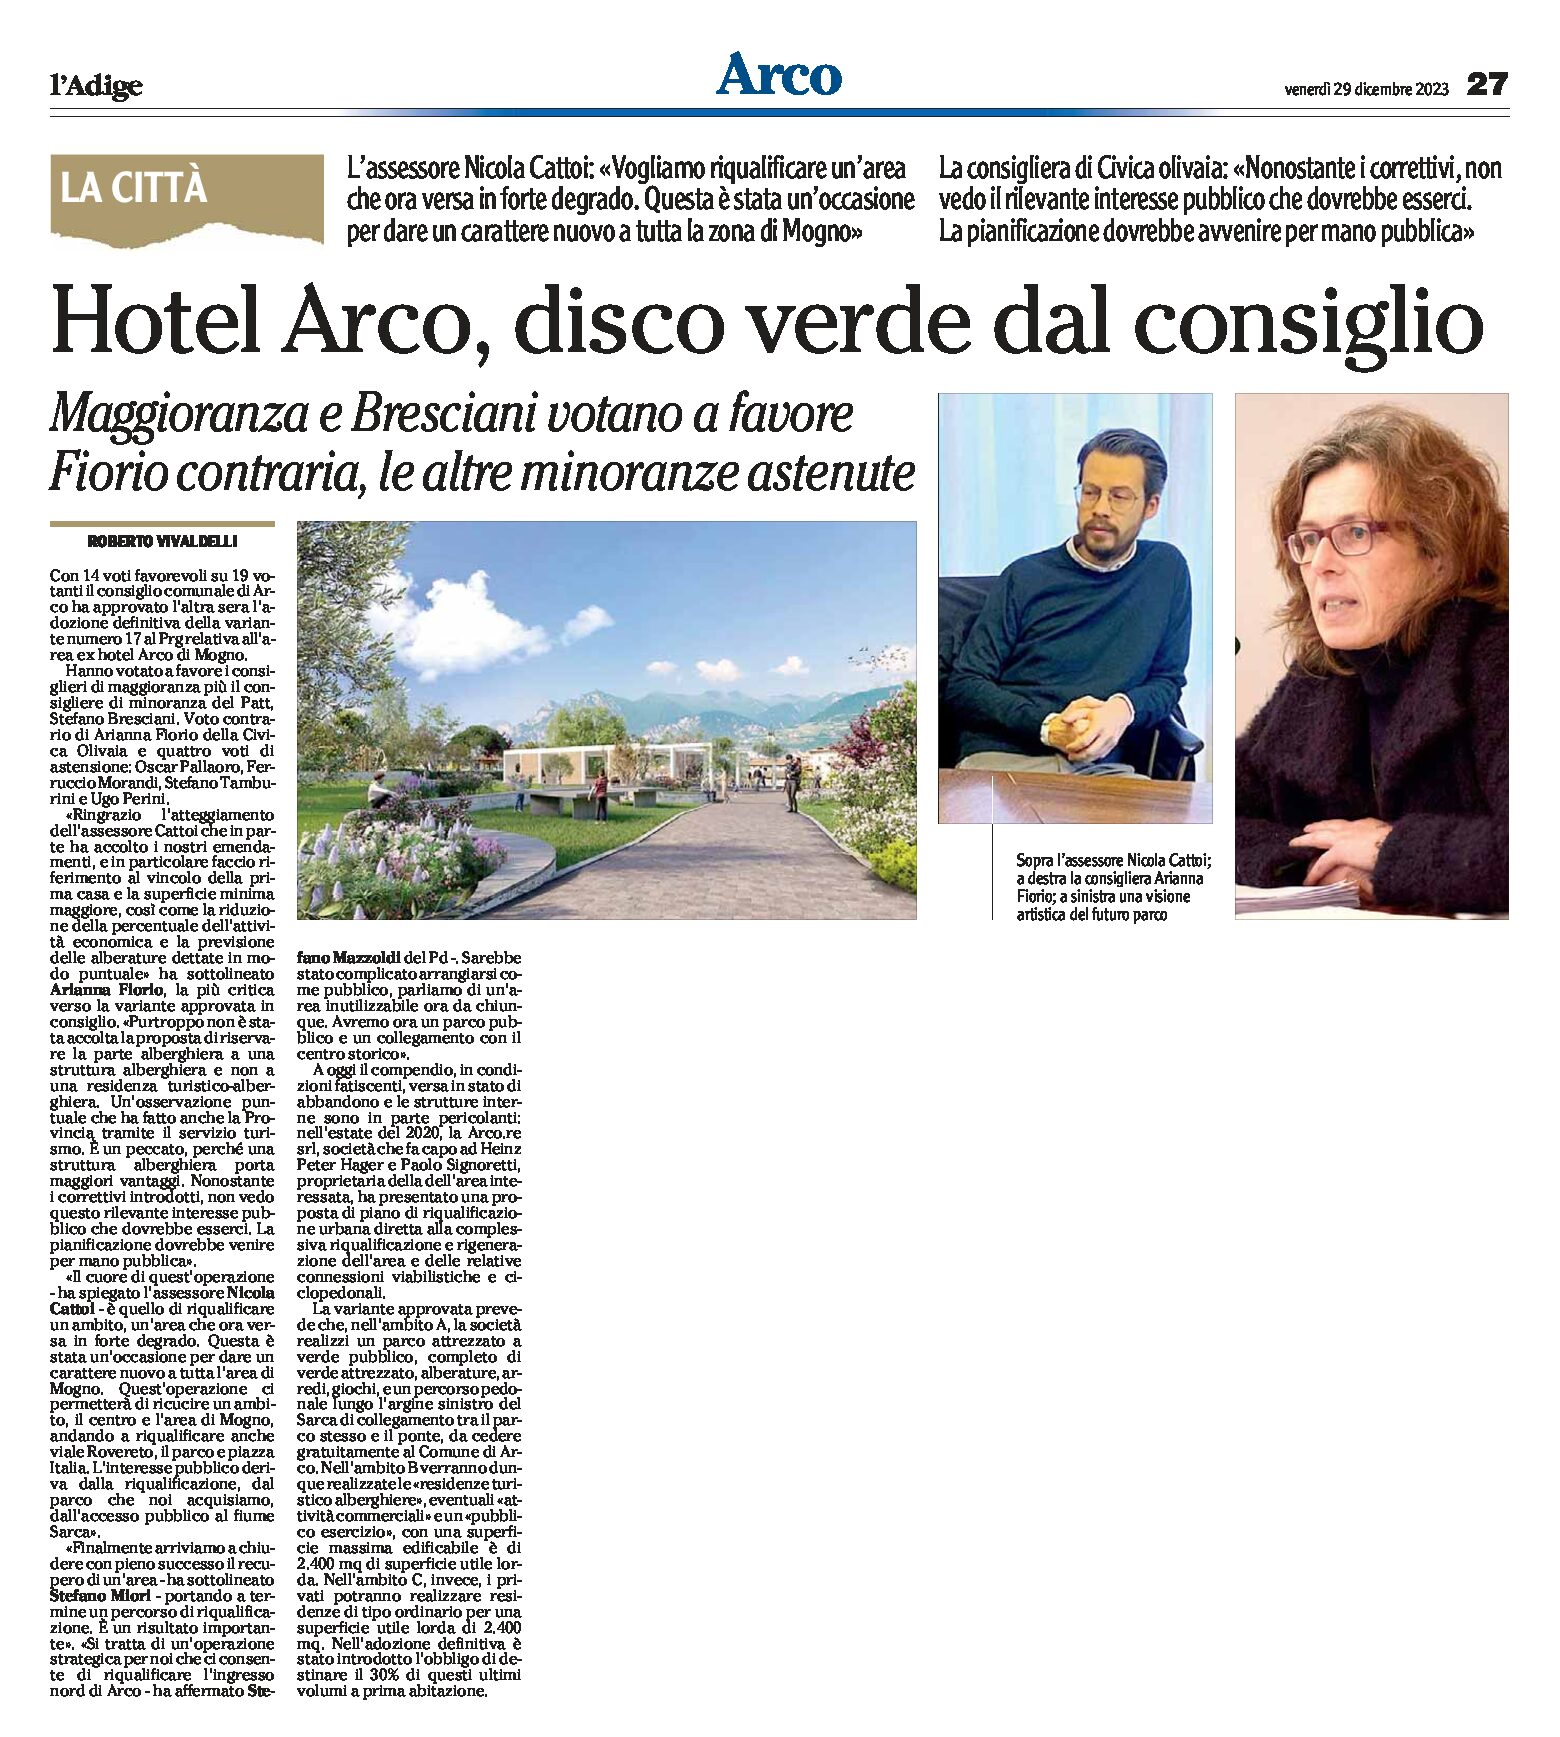 Hotel Arco: disco verde dal Consiglio